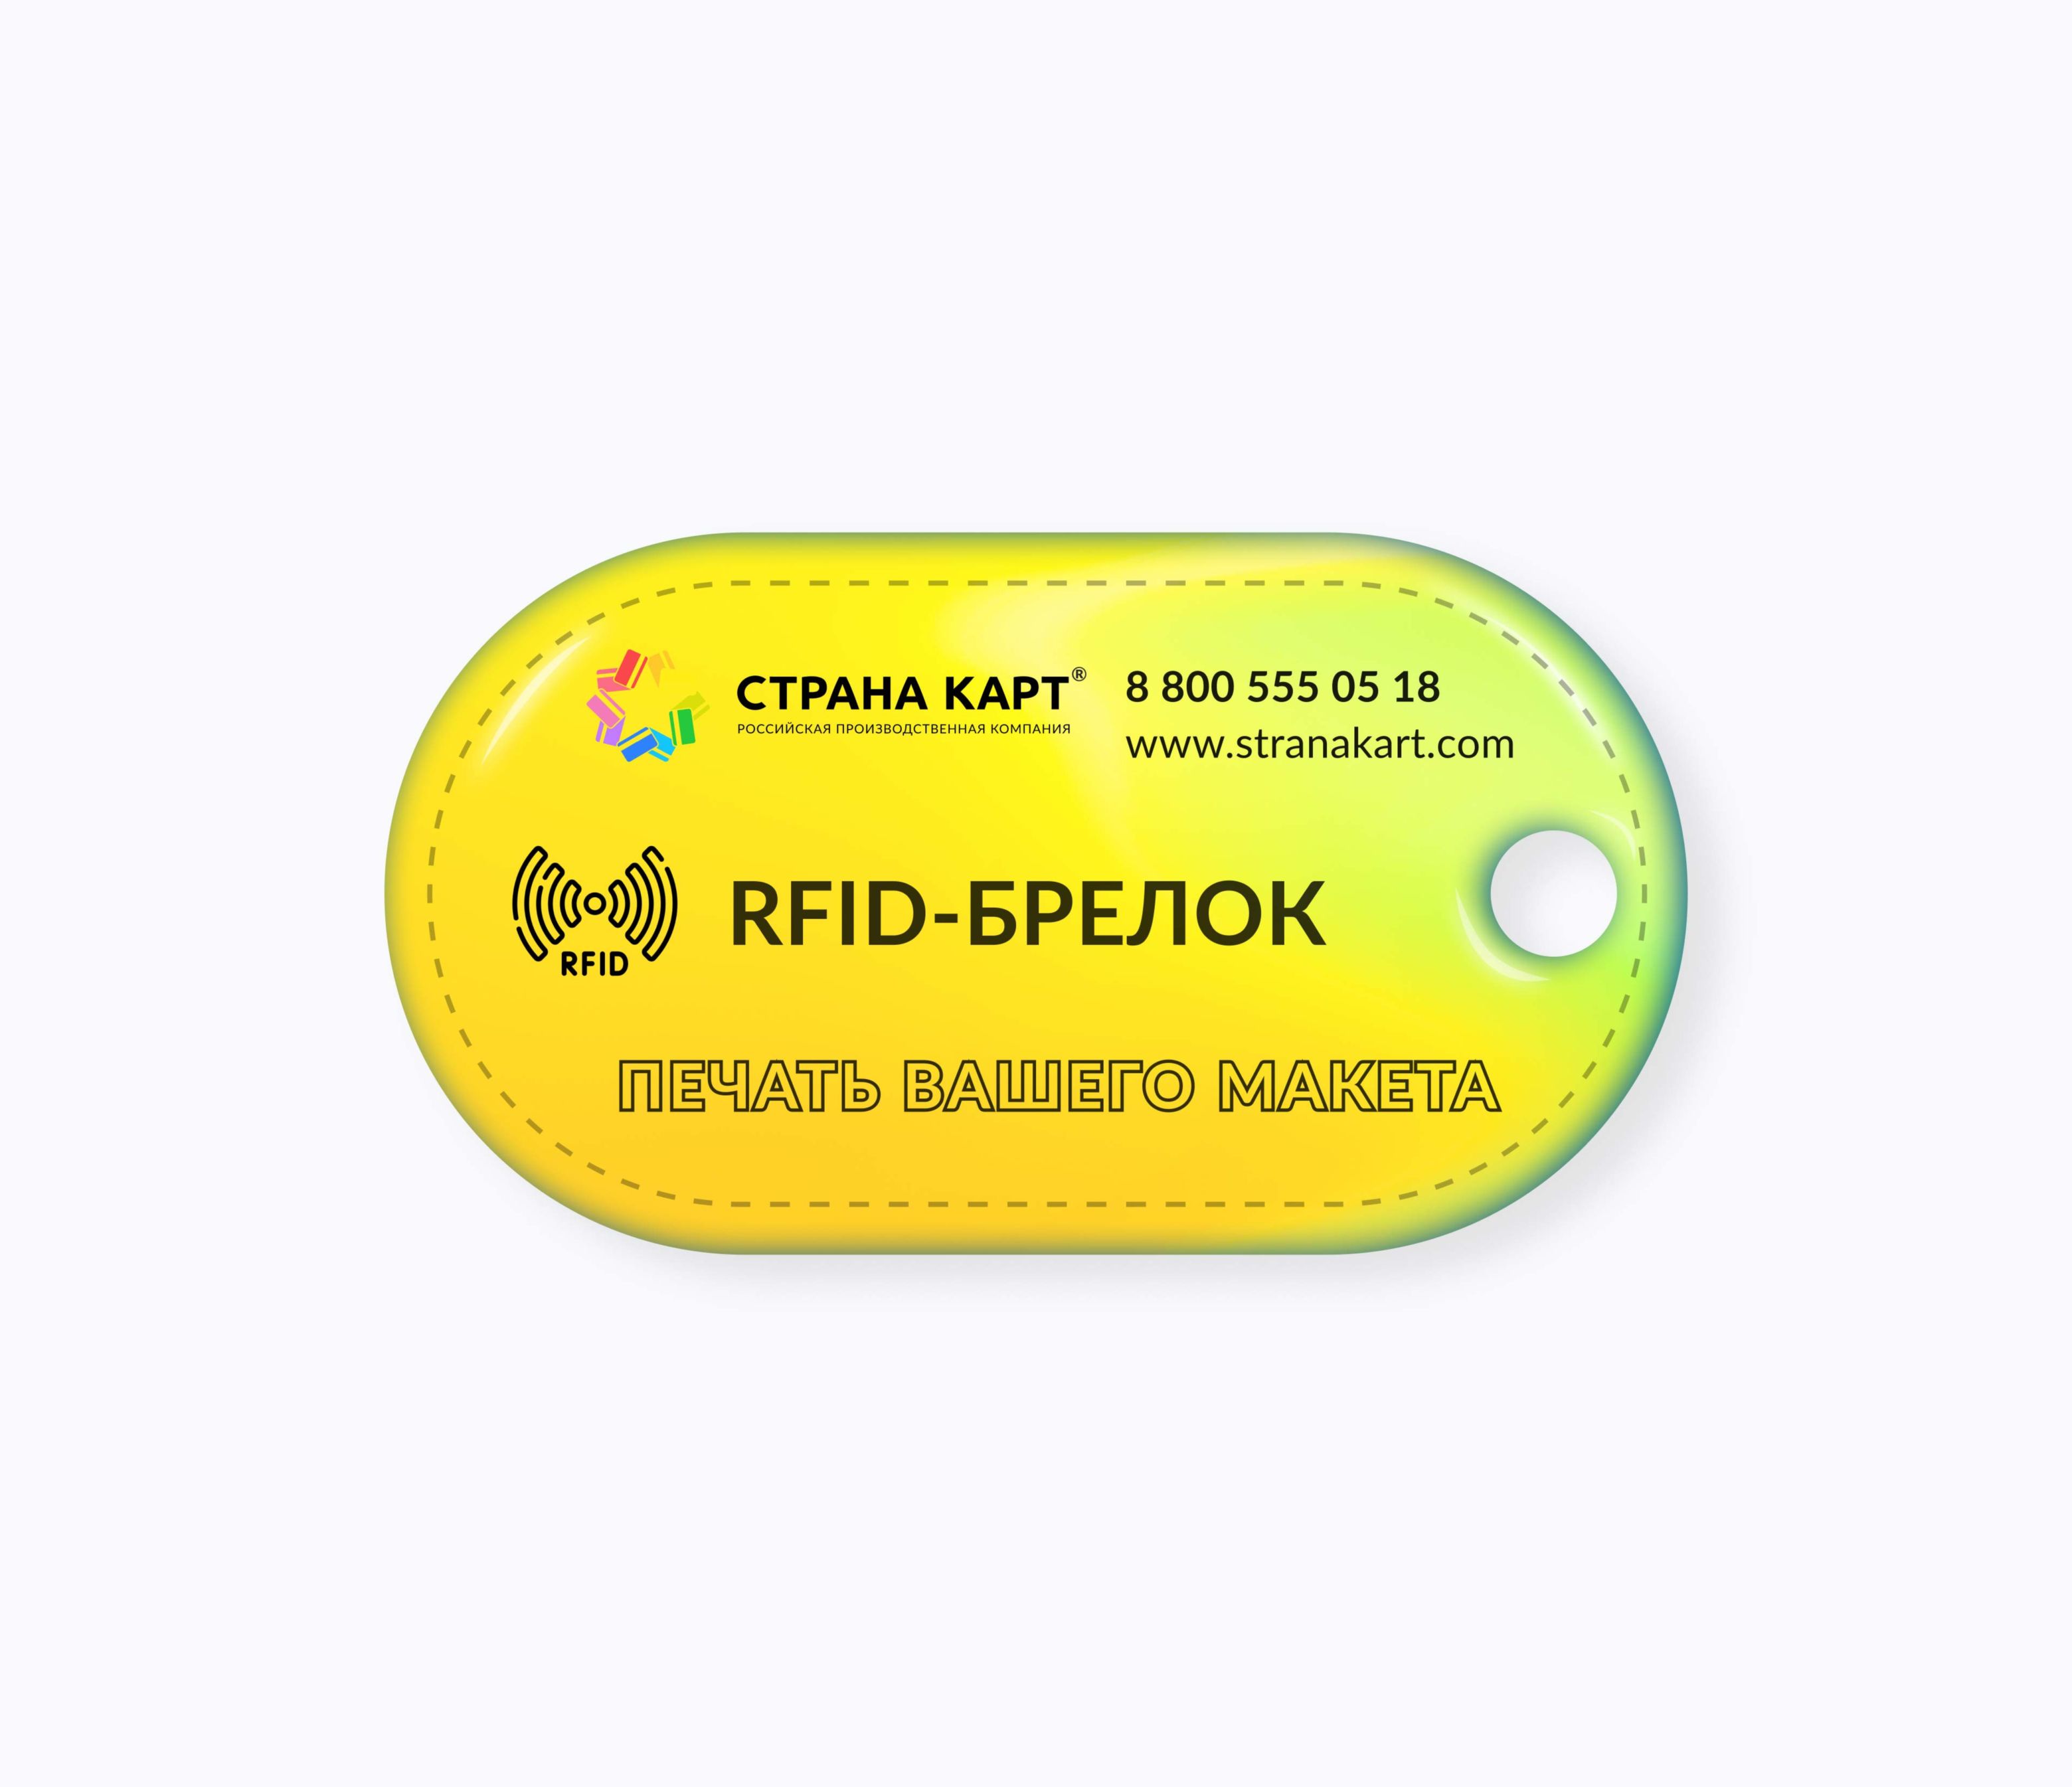 Овальные RFID-брелоки NEOKEY® с чипом для аквапарков RFID-брелоки NEOKEY® с чипом для аквапарков